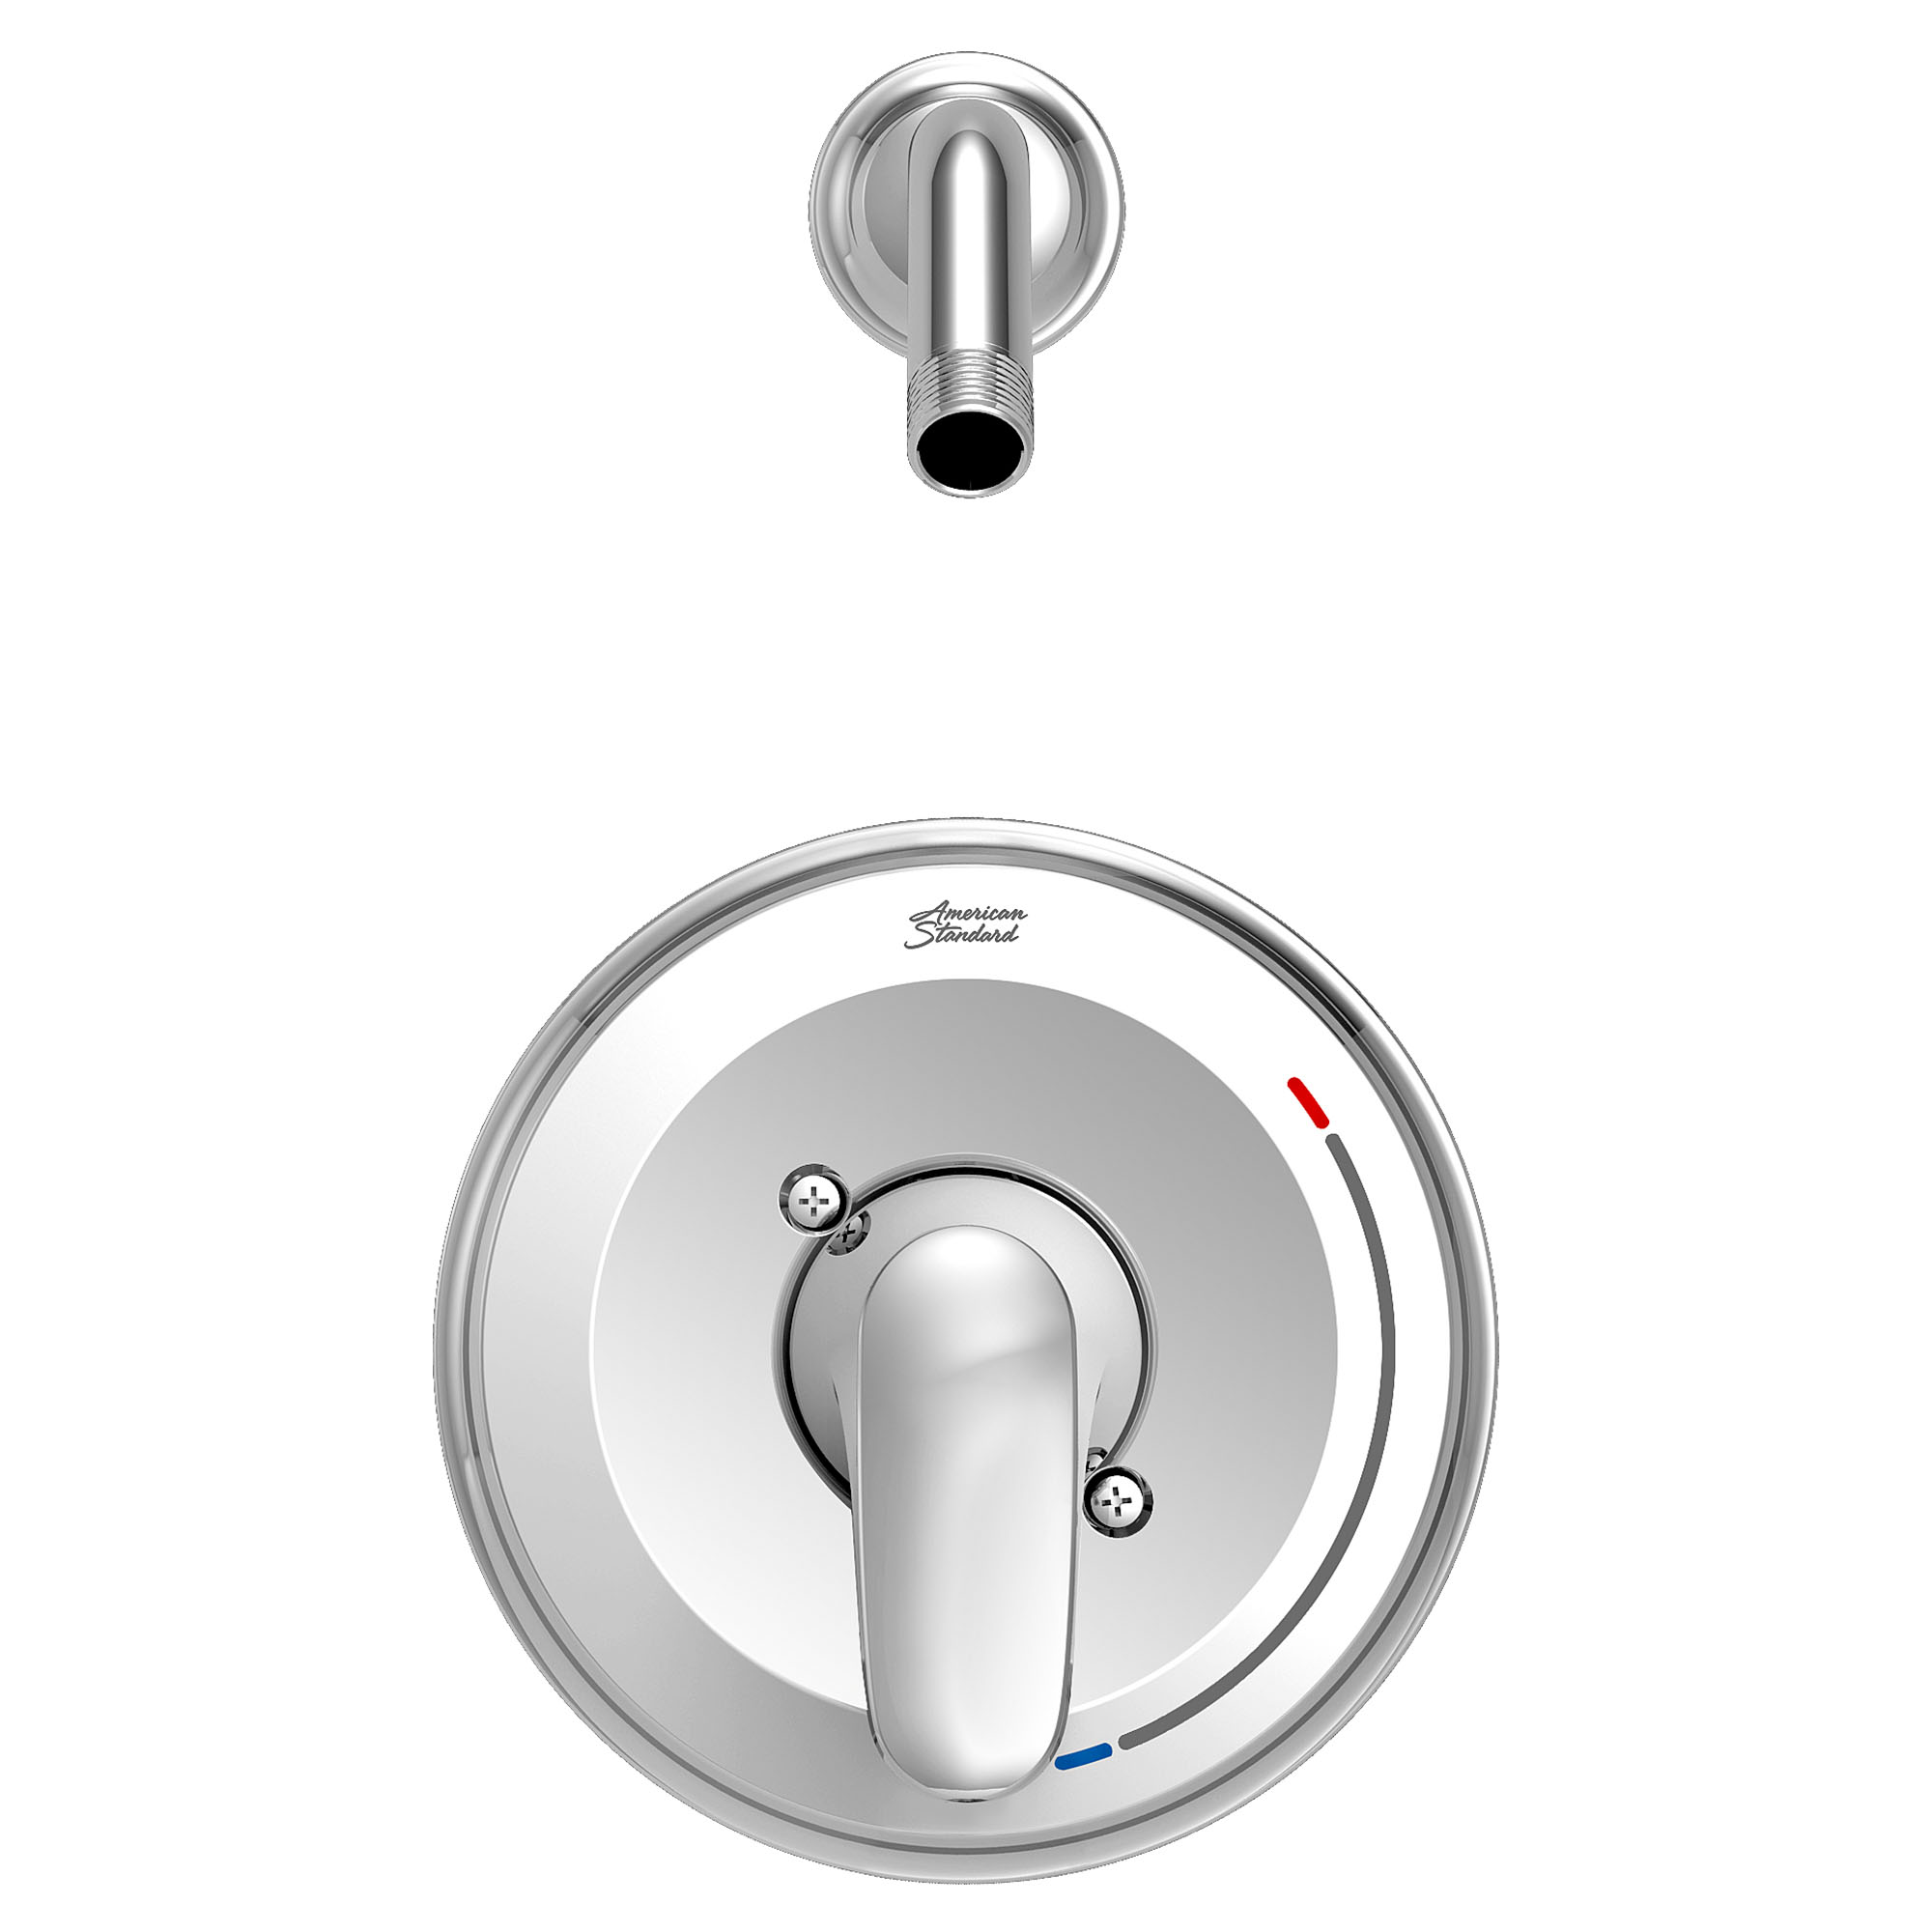 ColonyMC PRO - Ensemble de robinetterie pour douche incluant une cartouche à pression équilibrée en double céramique et une poignée à levier, sans pomme de douche